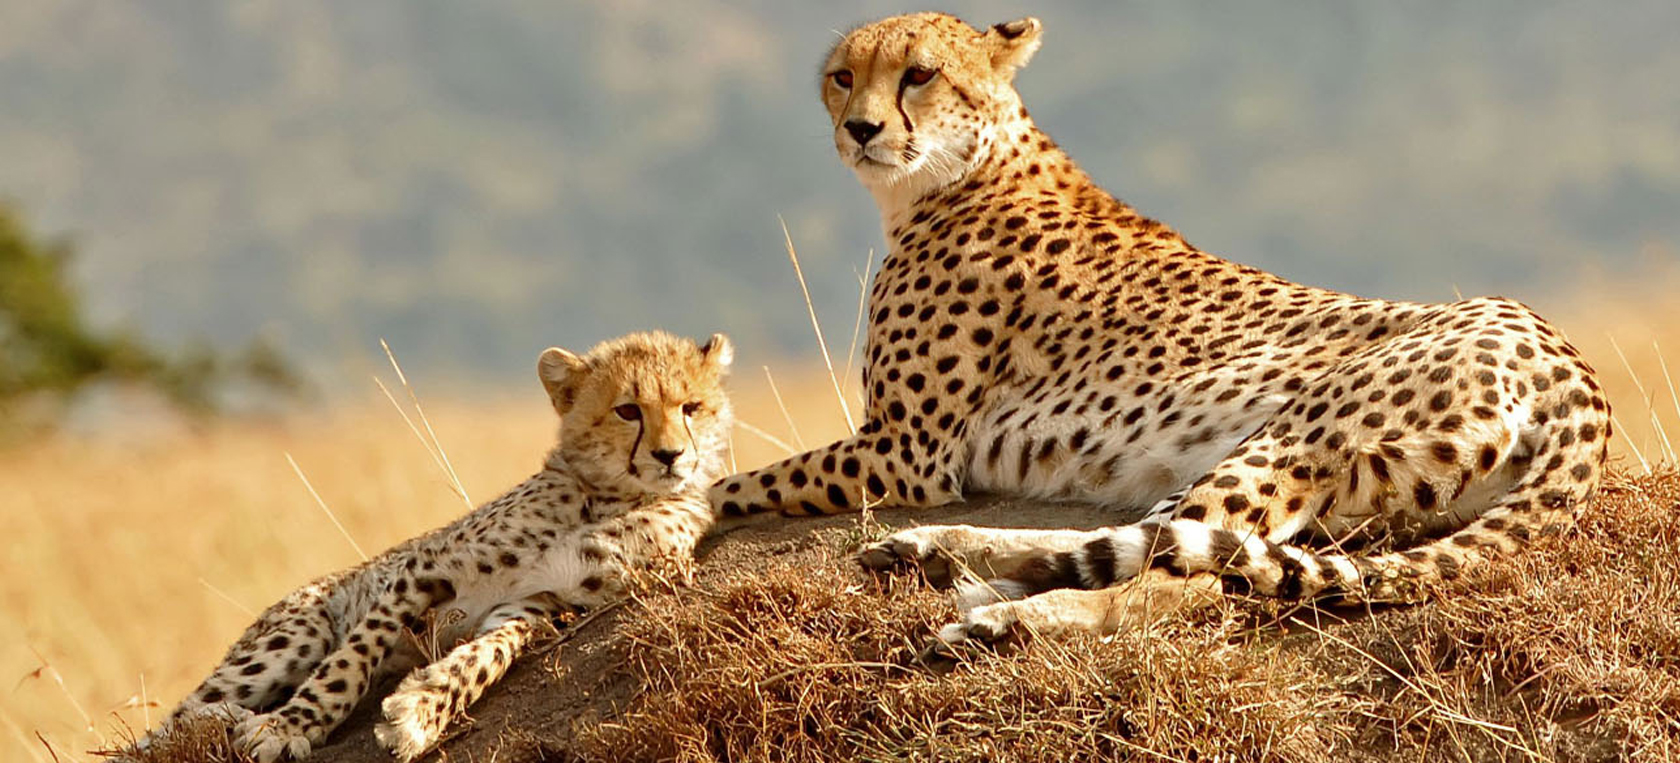 african big cats safaris reviews